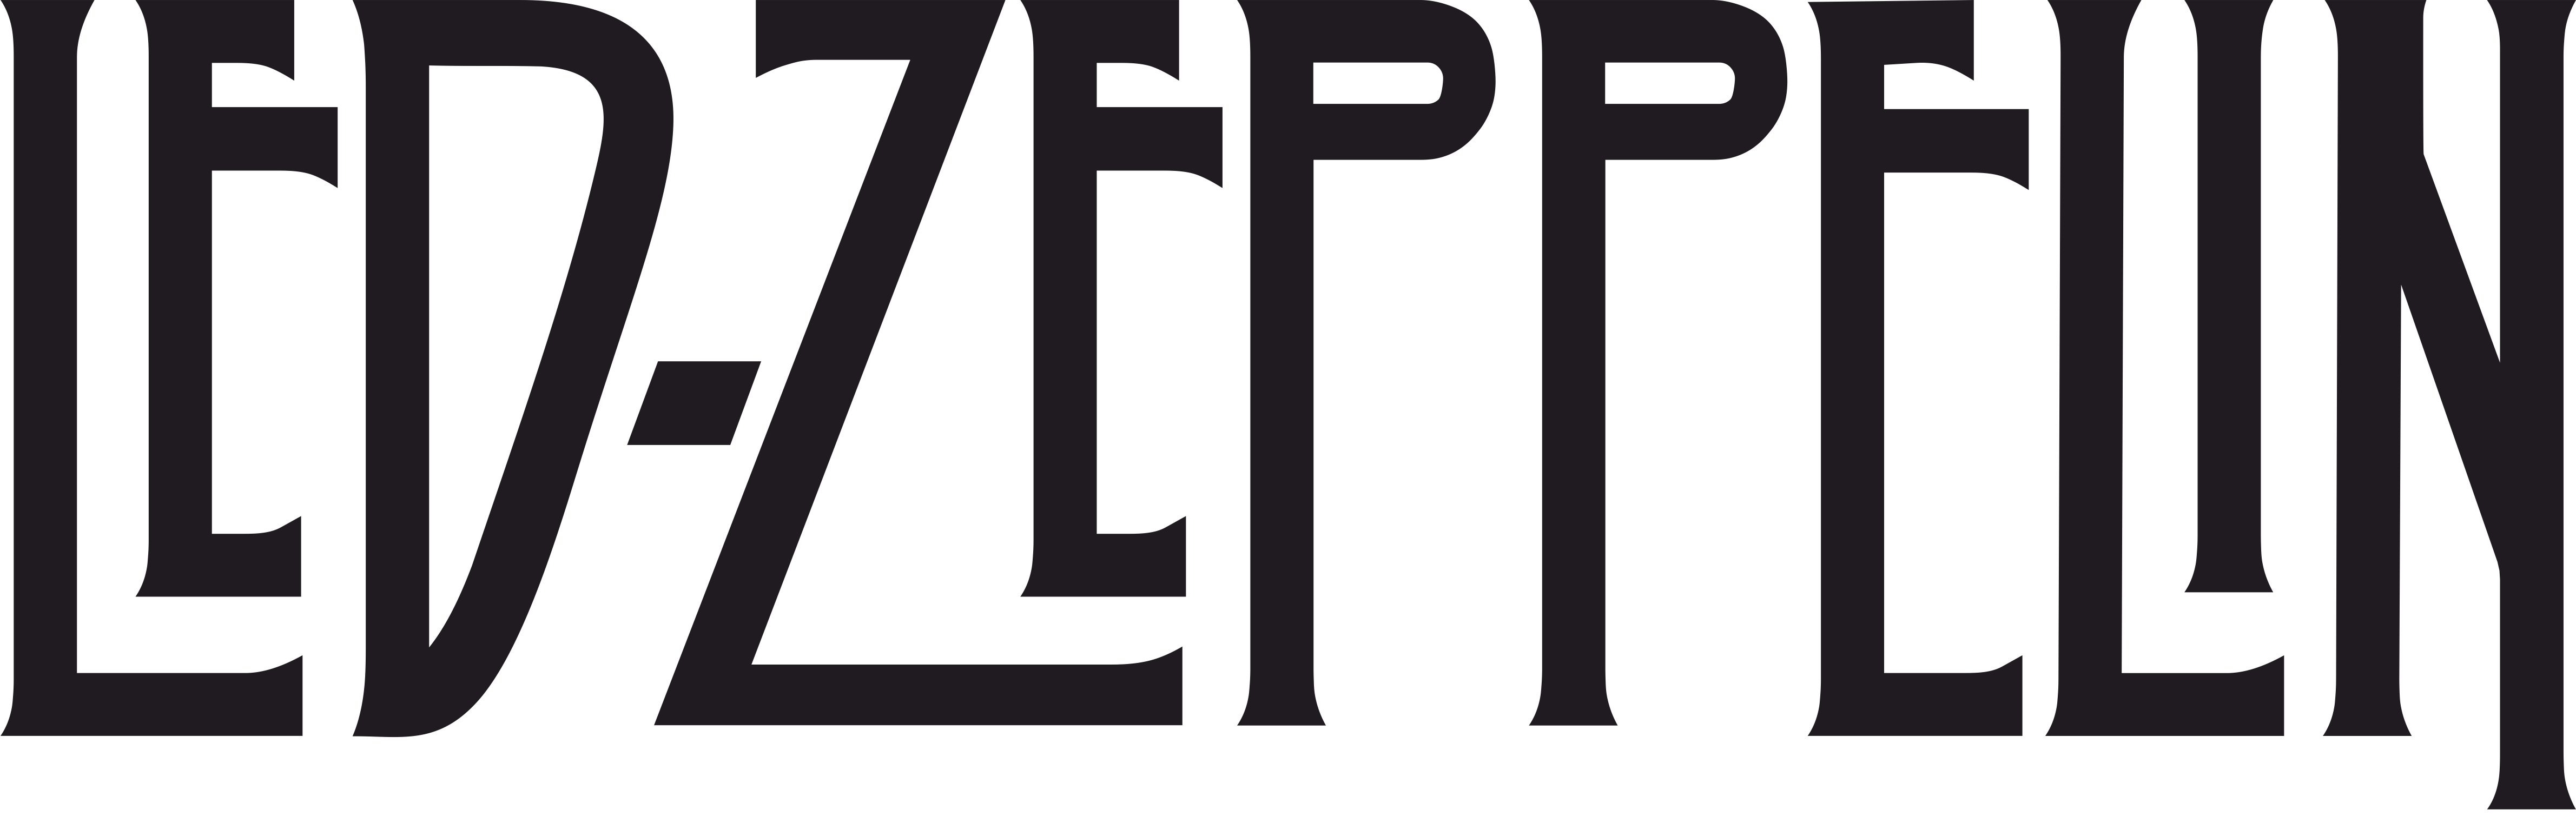 Led Zeppelin_logo